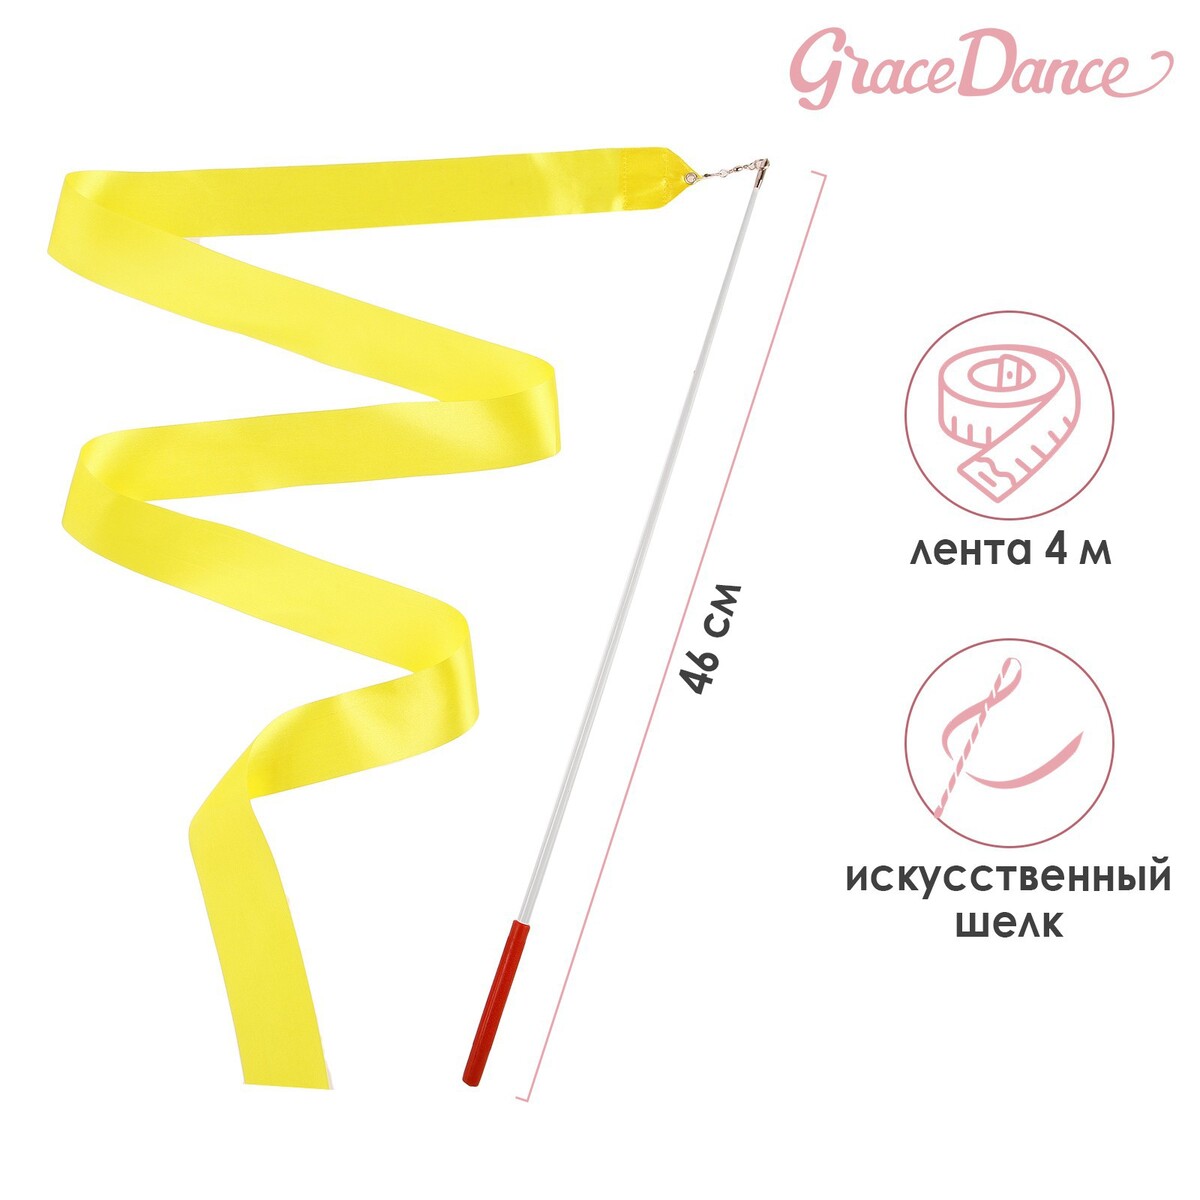 Лента для художественной гимнастики с палочкой grace dance, 4 м, цвет желтый